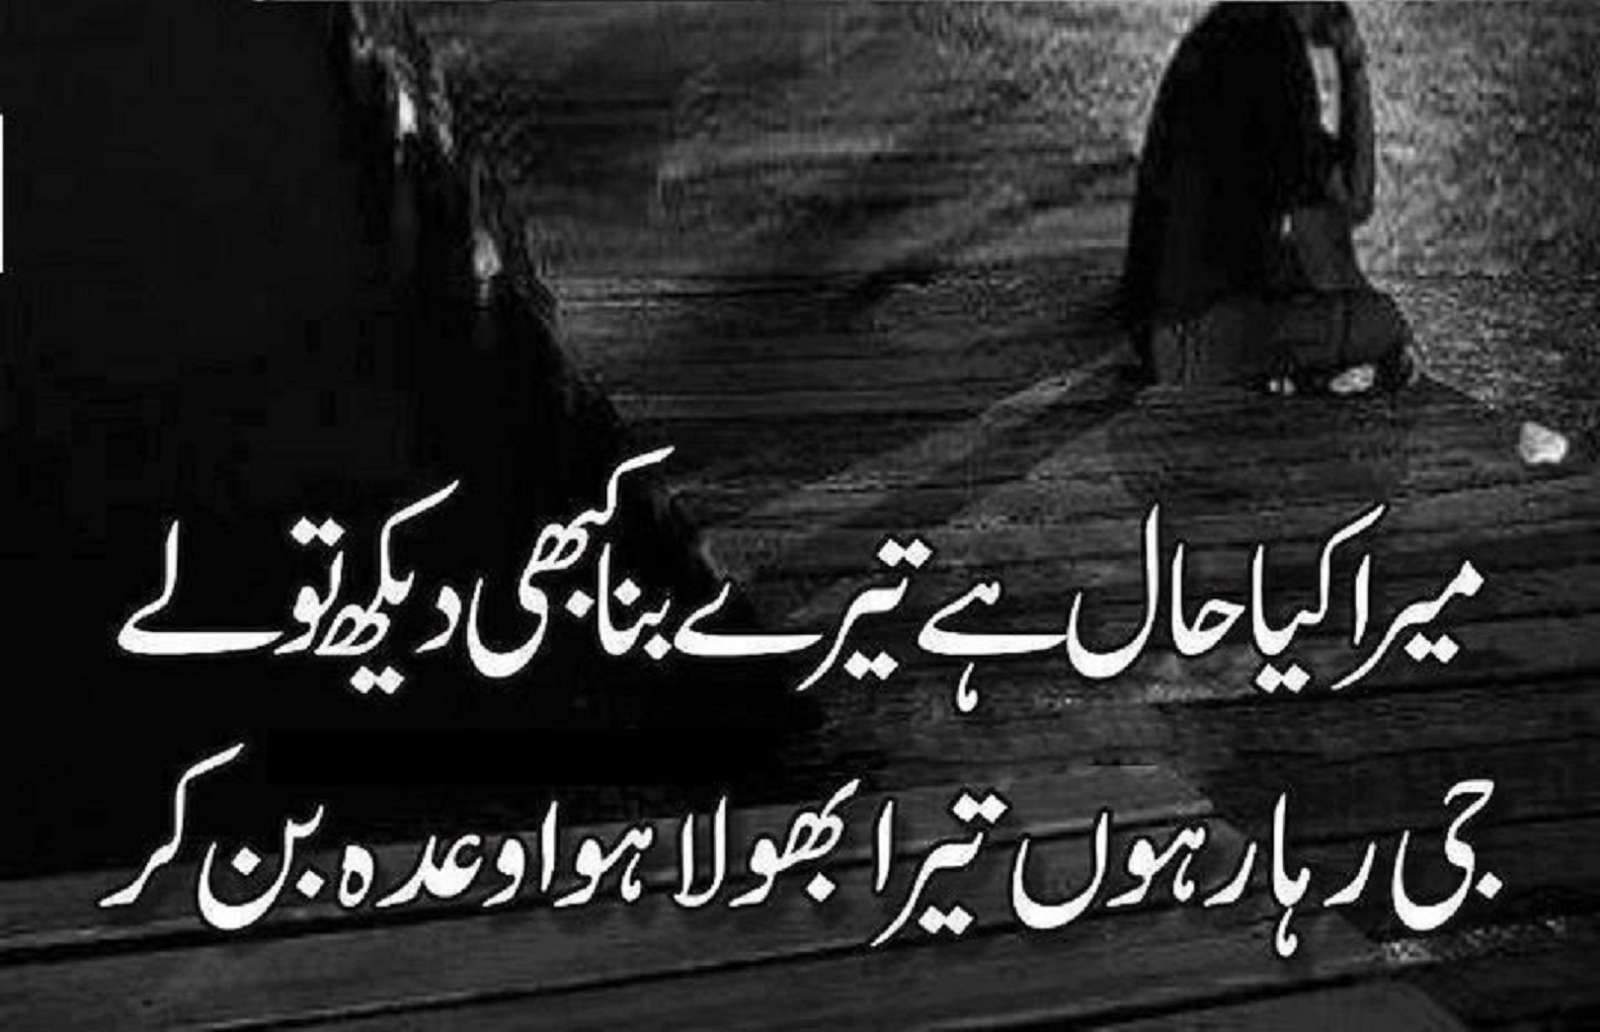 urdu sad poetry images free download